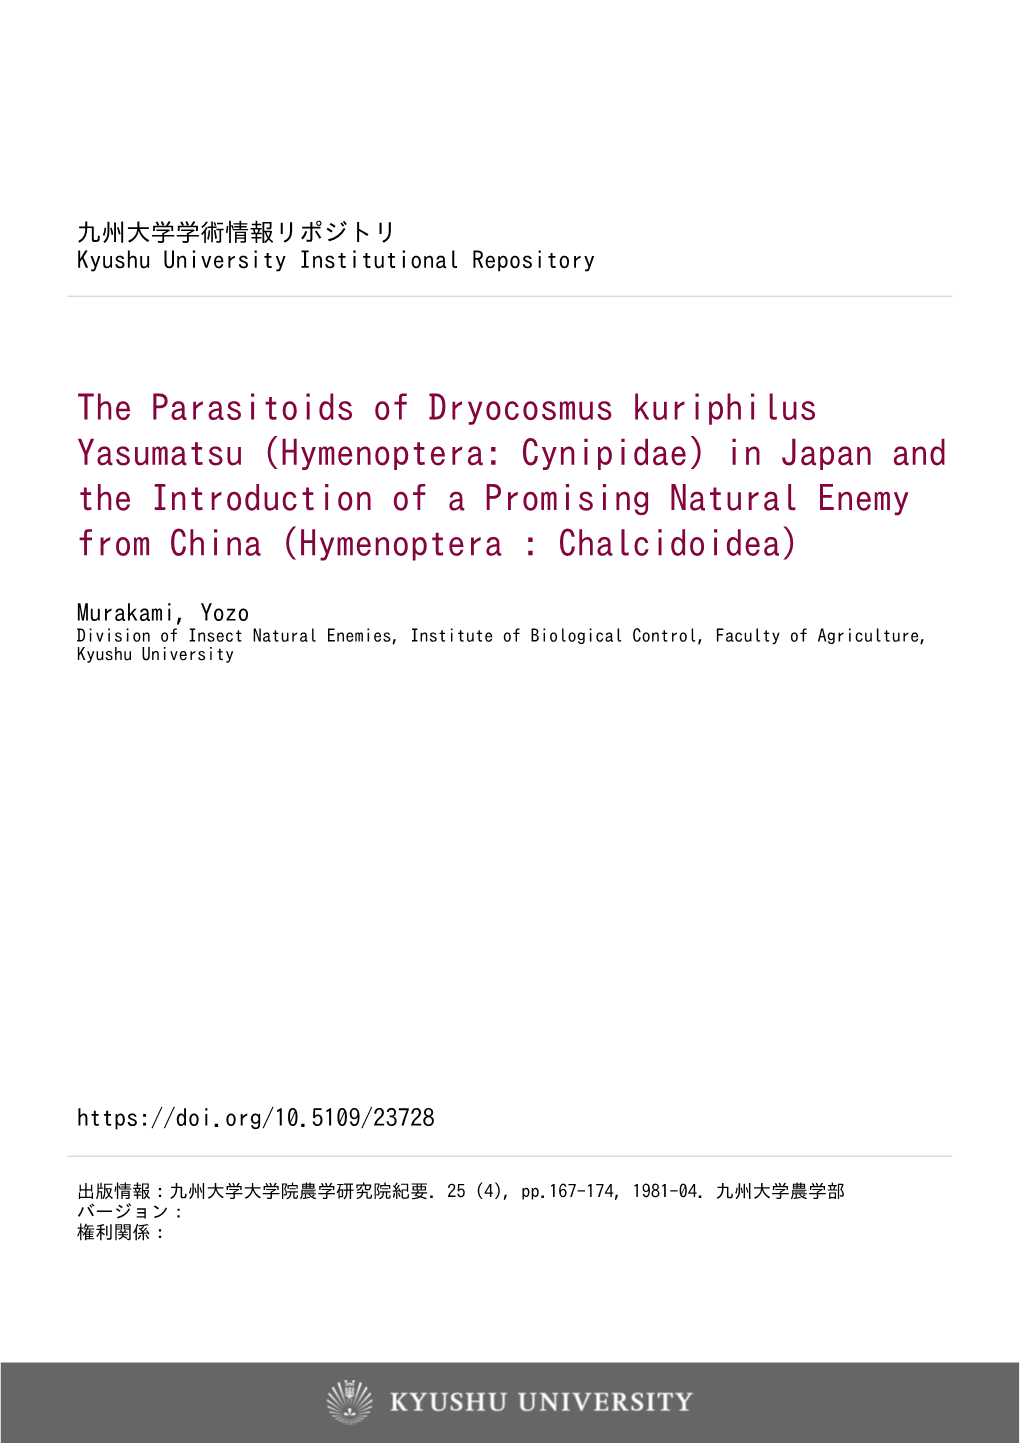 The Parasitoids of Dryocosmus Kuriphilus Yasumatsu